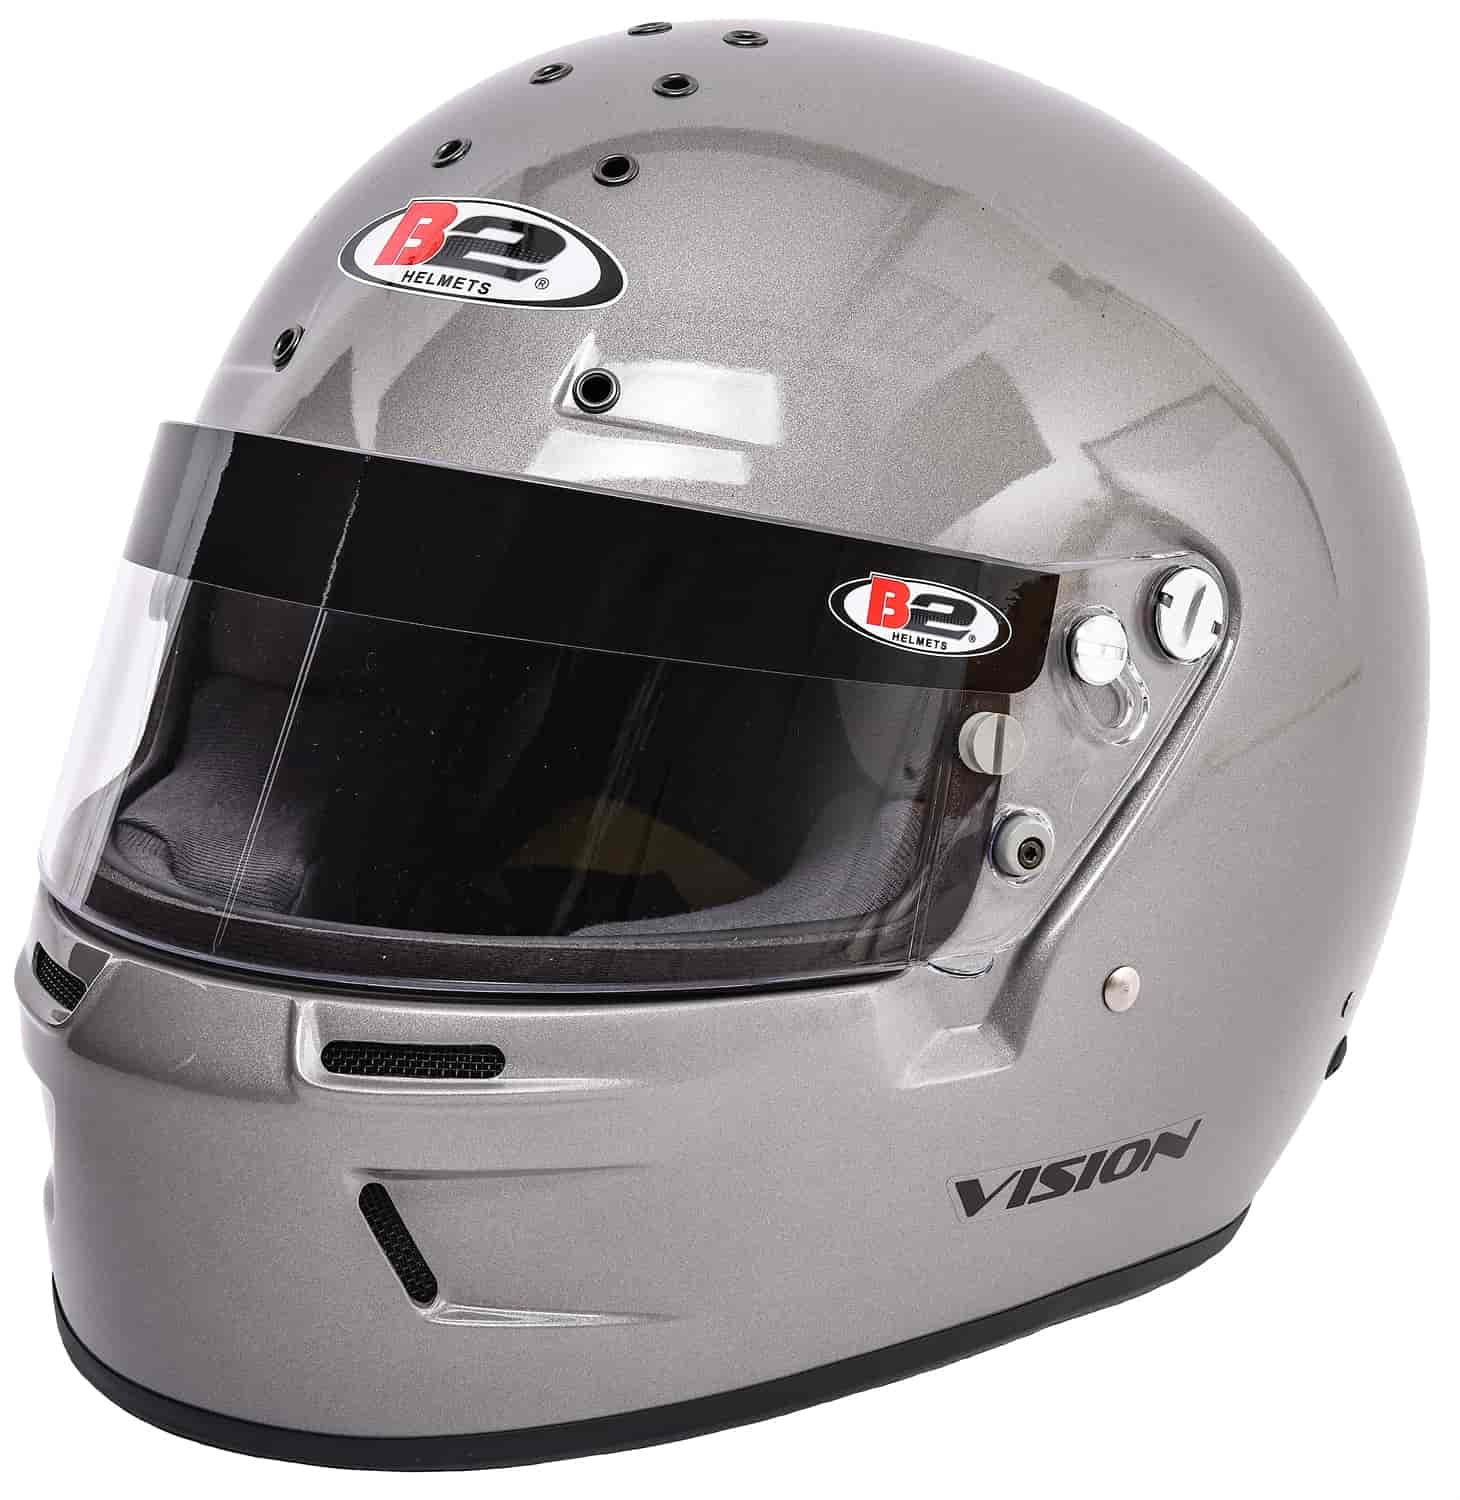 Vision Helmet Silver - Medium